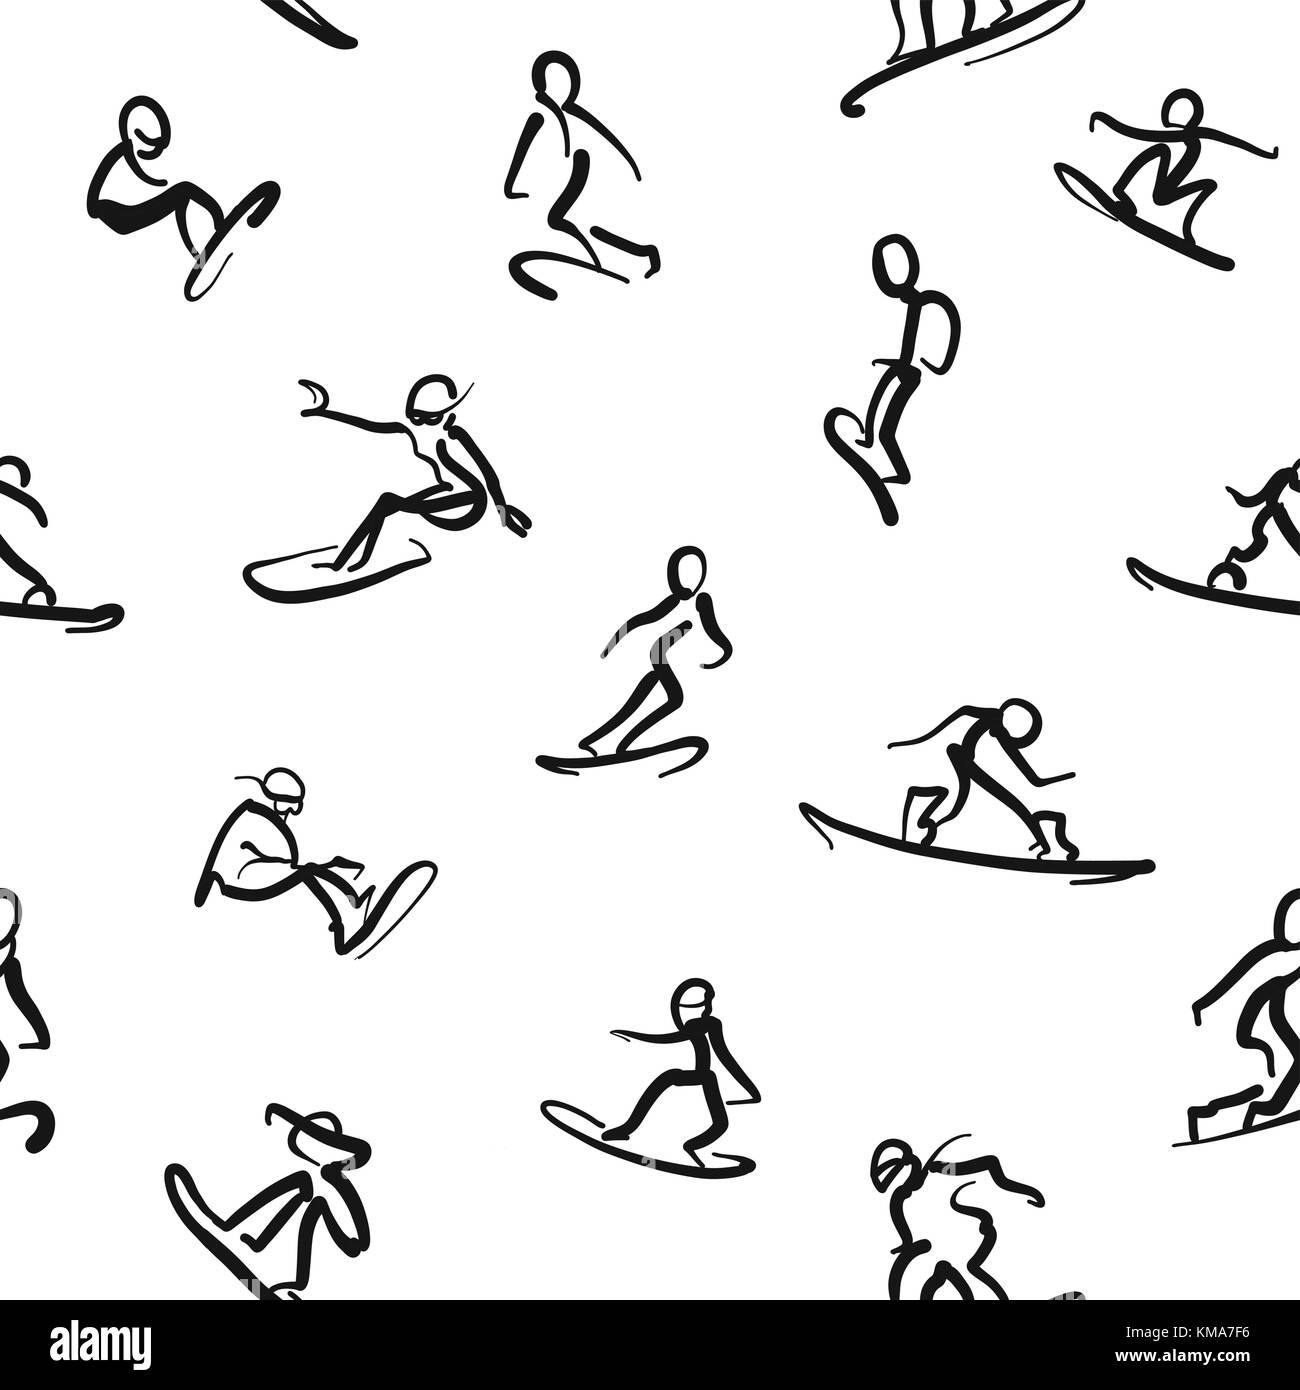 Snowboard - calligrafico parete perfetta tecnica. Disegnato a mano porcilaie di movimento. Schizzi di vettore da digital pen. Illustrazione Vettoriale